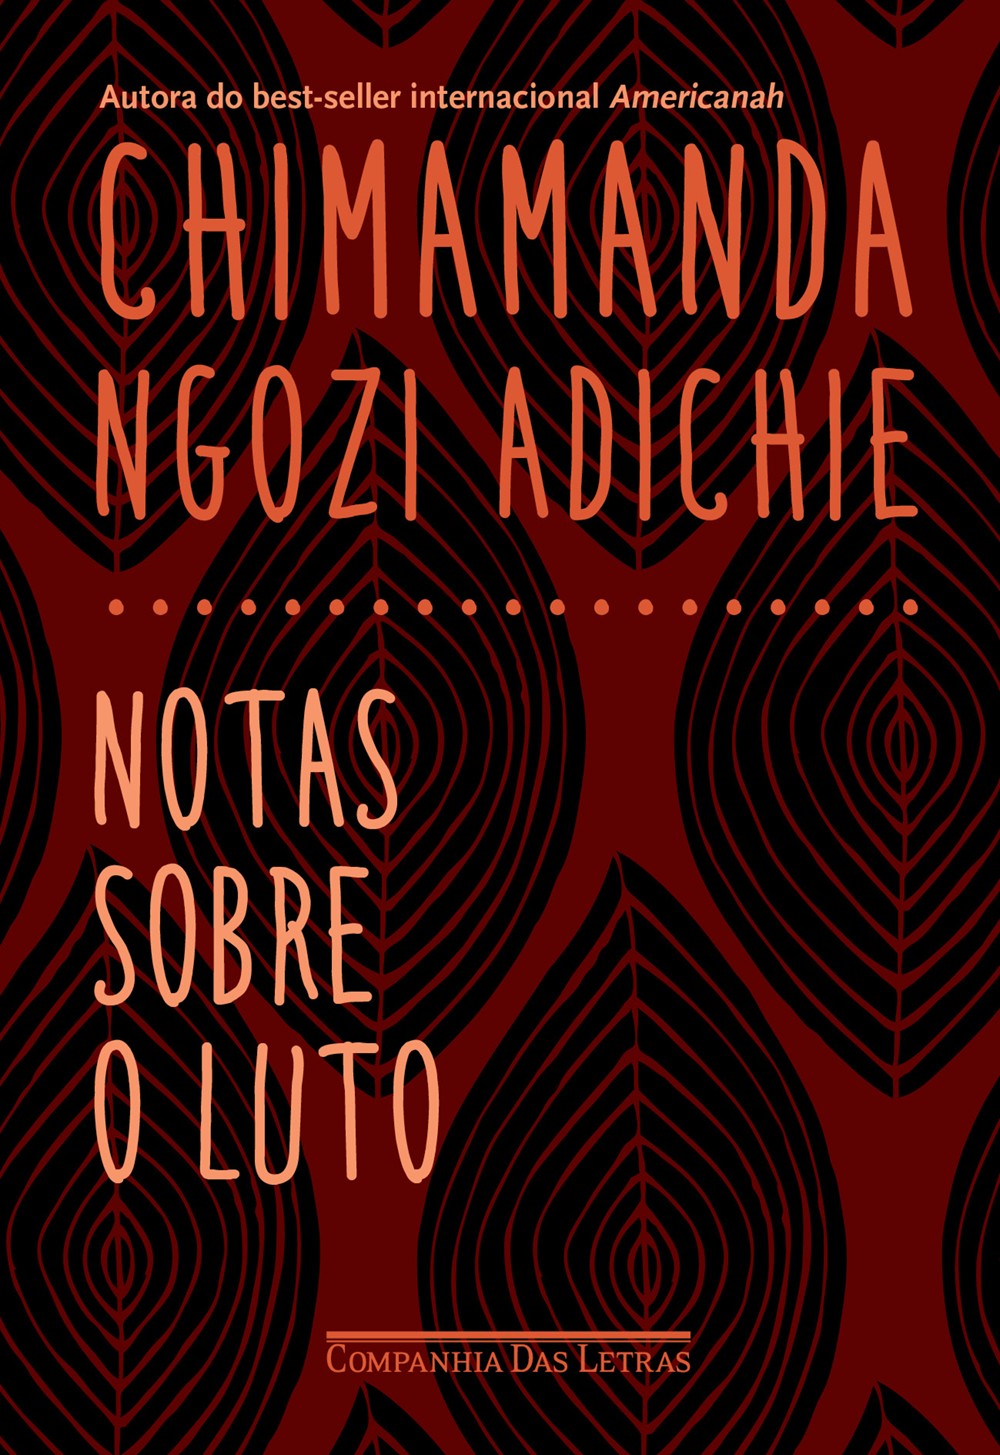 Notas sobre o luto, de Chimamanda Ngozi Adichie (Companhia das Letras, 144 páginas, R$ 29,90) (Foto: Divulgação)